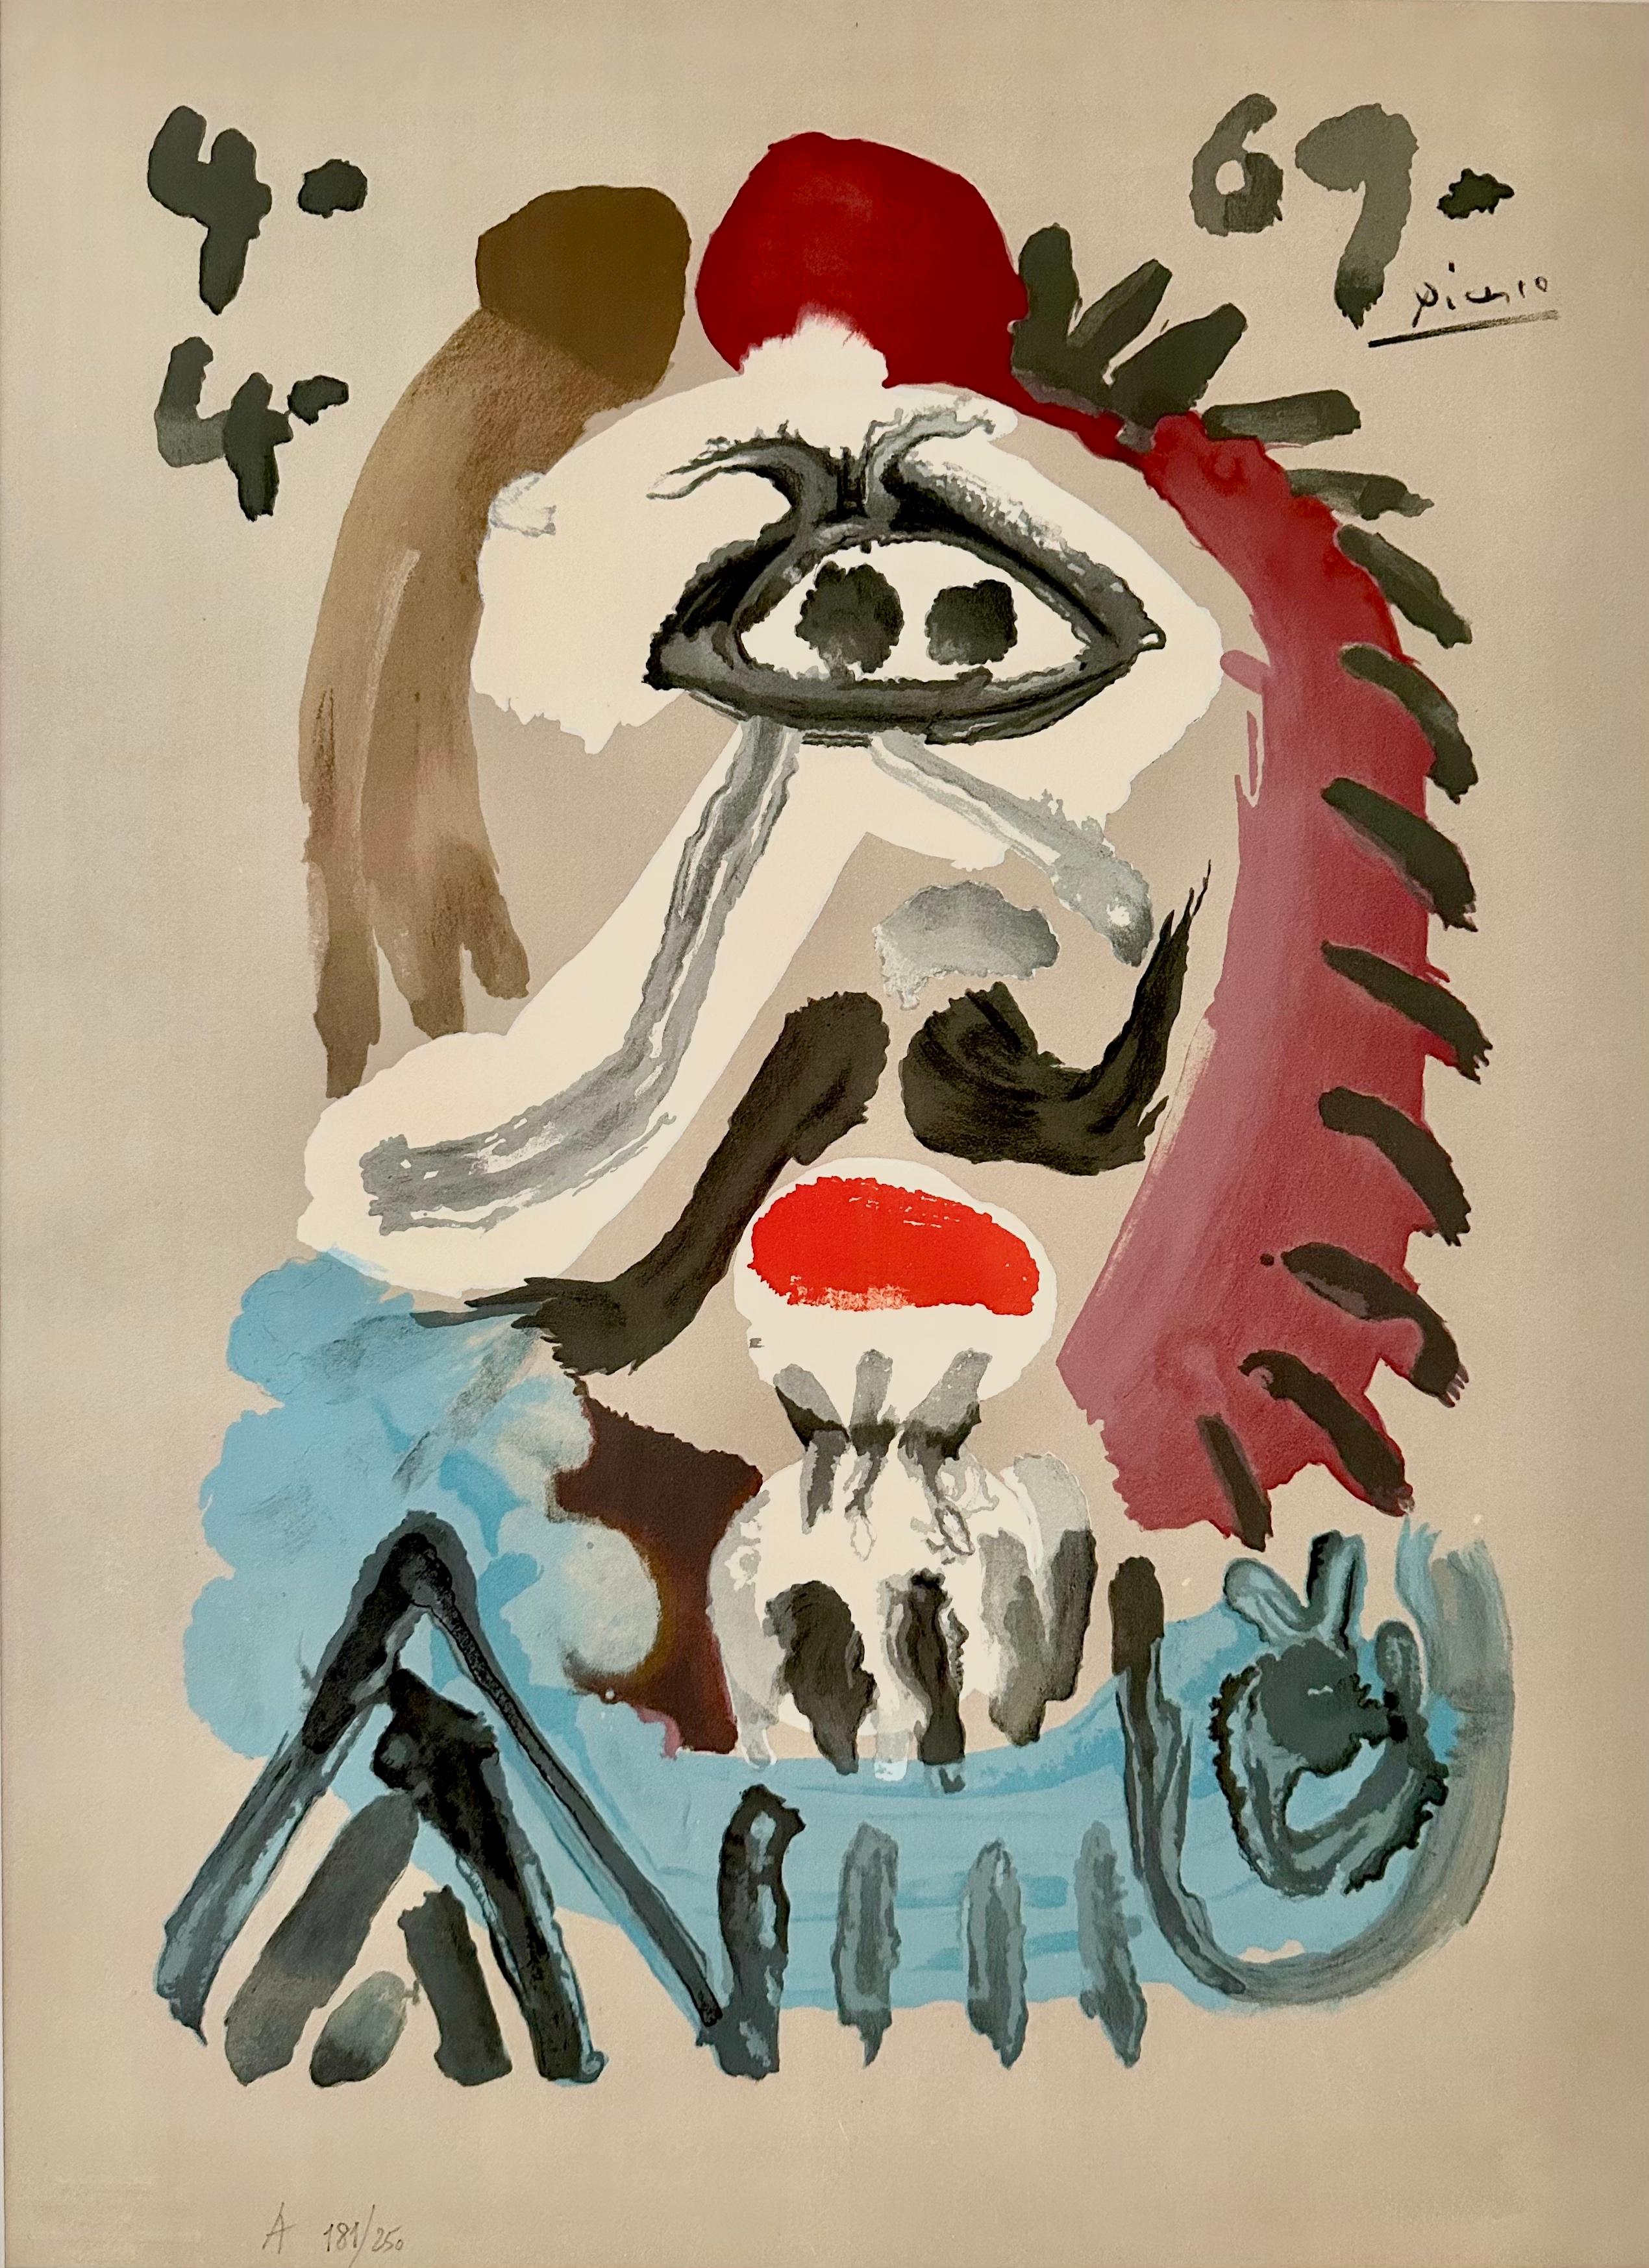 Pablo Picasso Portrait Print - Portraits Imaginaires 4.4.69